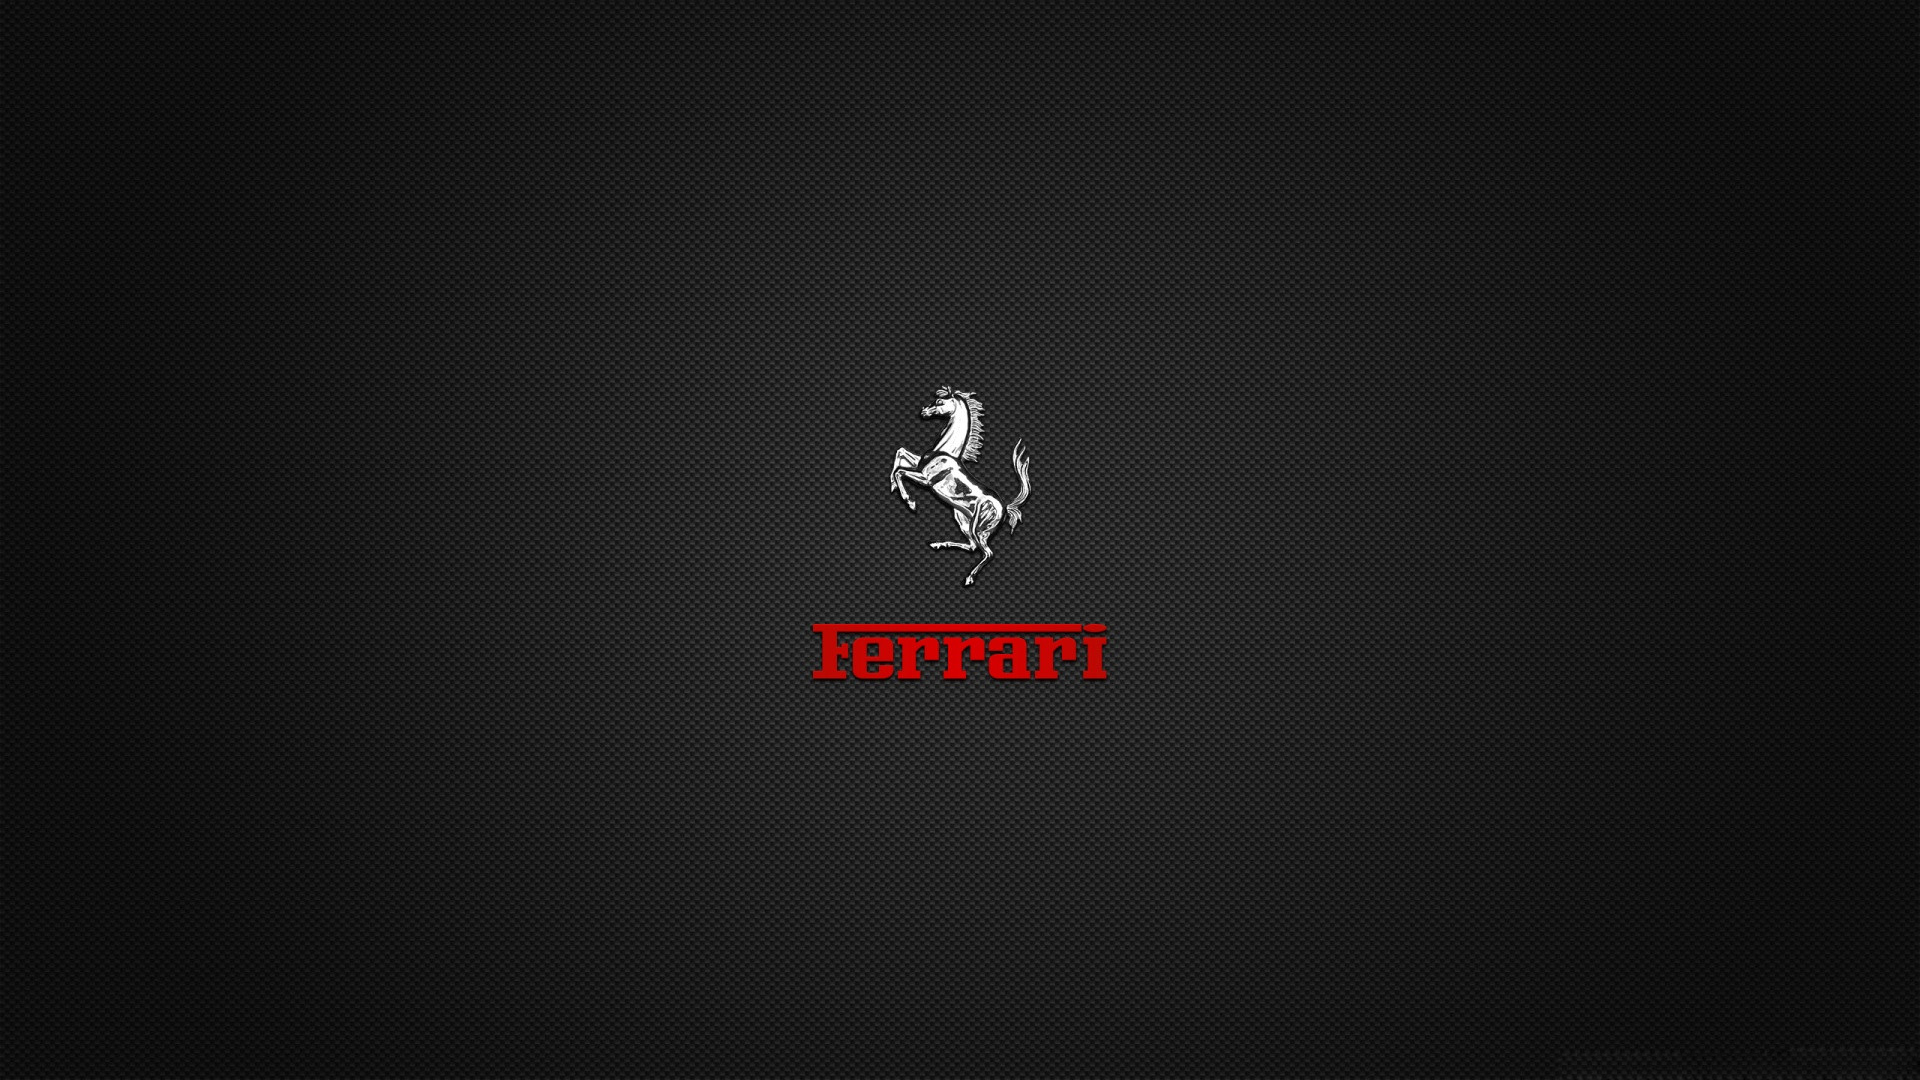 Ferrari Logo Wallpaper Download | MobCup